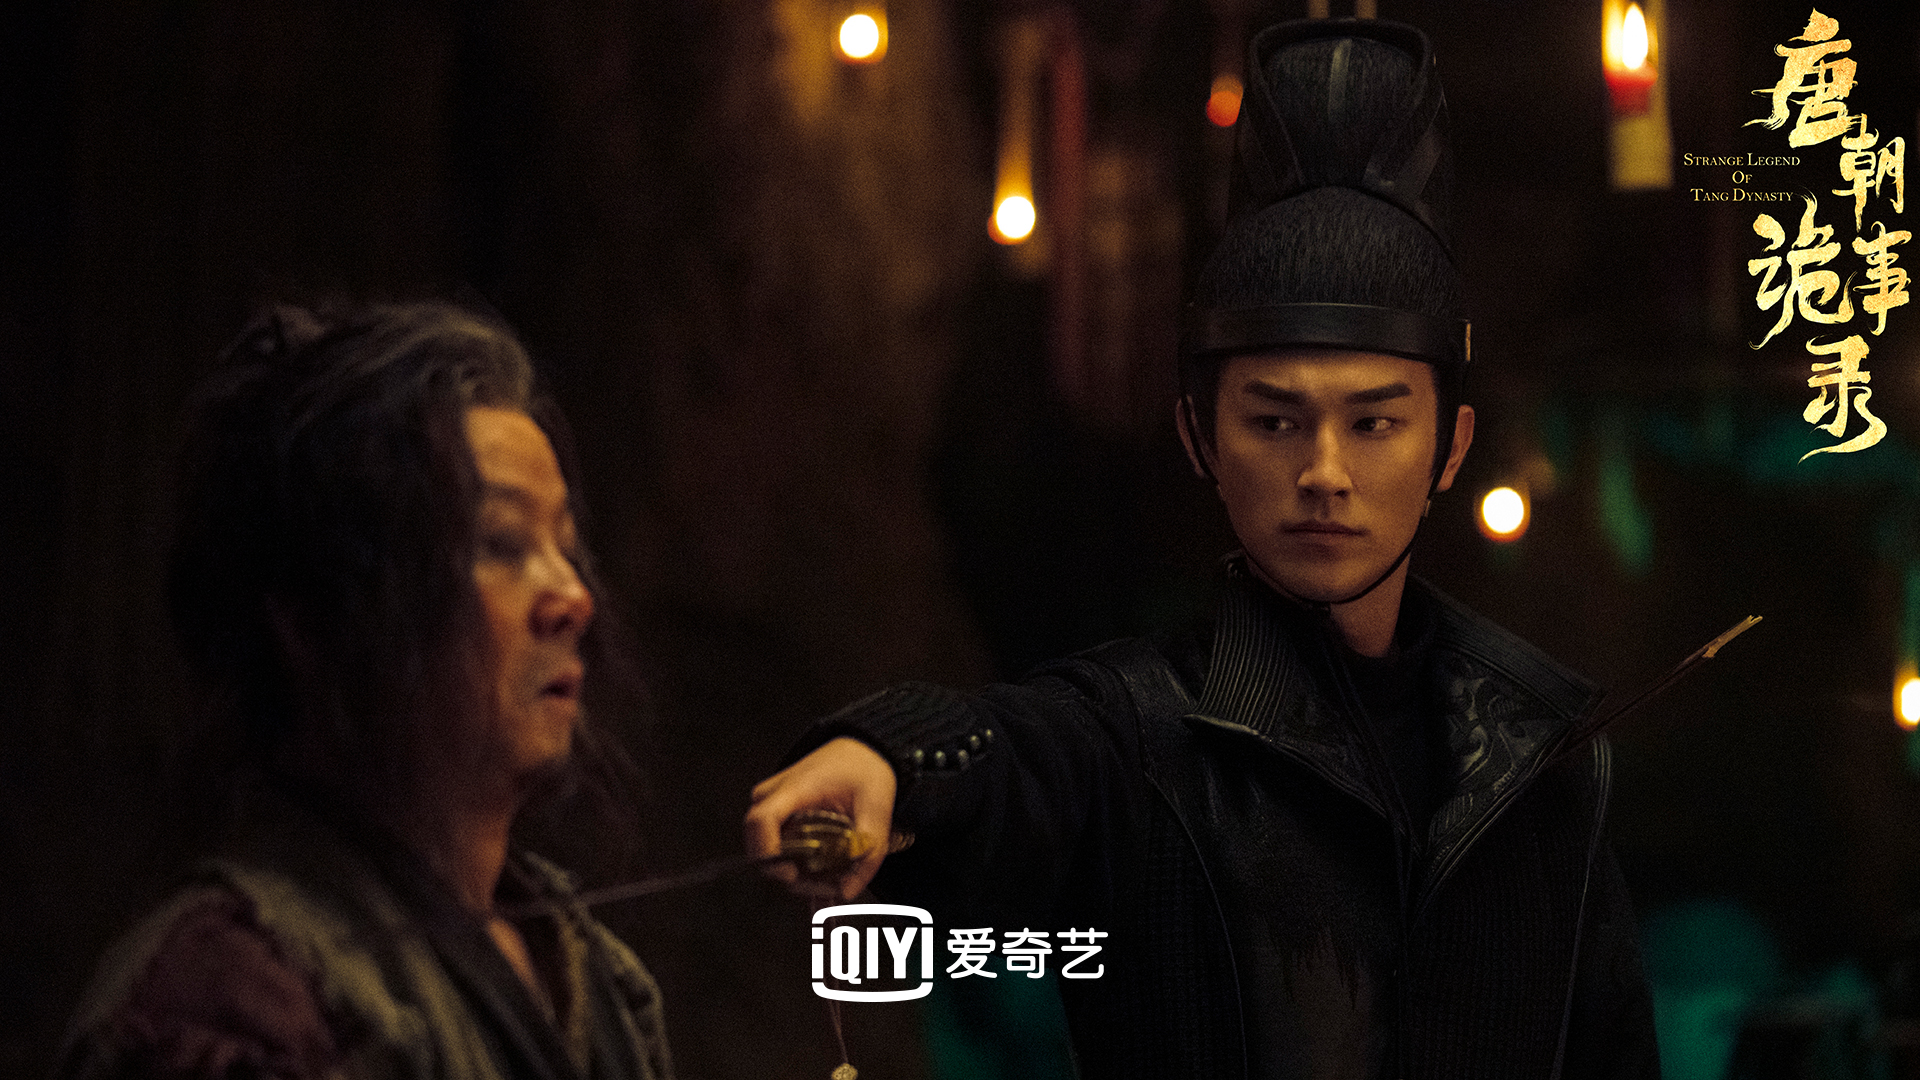 Drama - Strange Legend of Tang Dynasty : 长信传媒 GHY Culture & Media